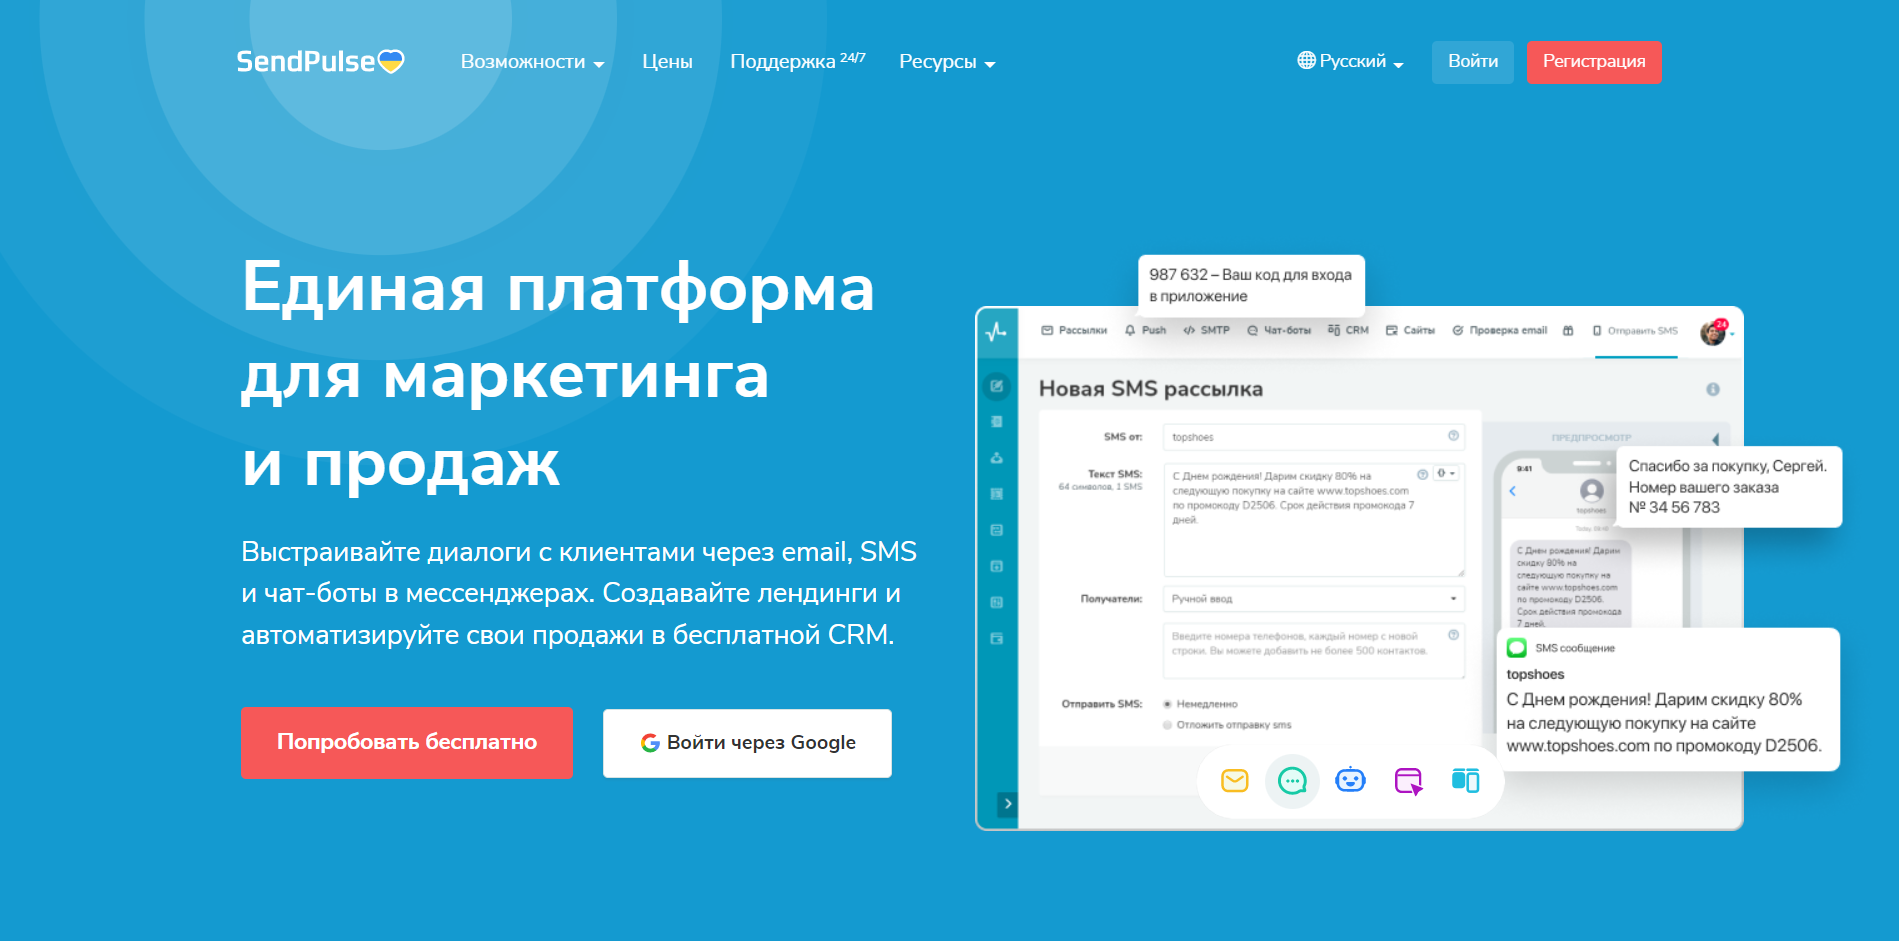 Украинская платформа для отправки писем SENDPULSE